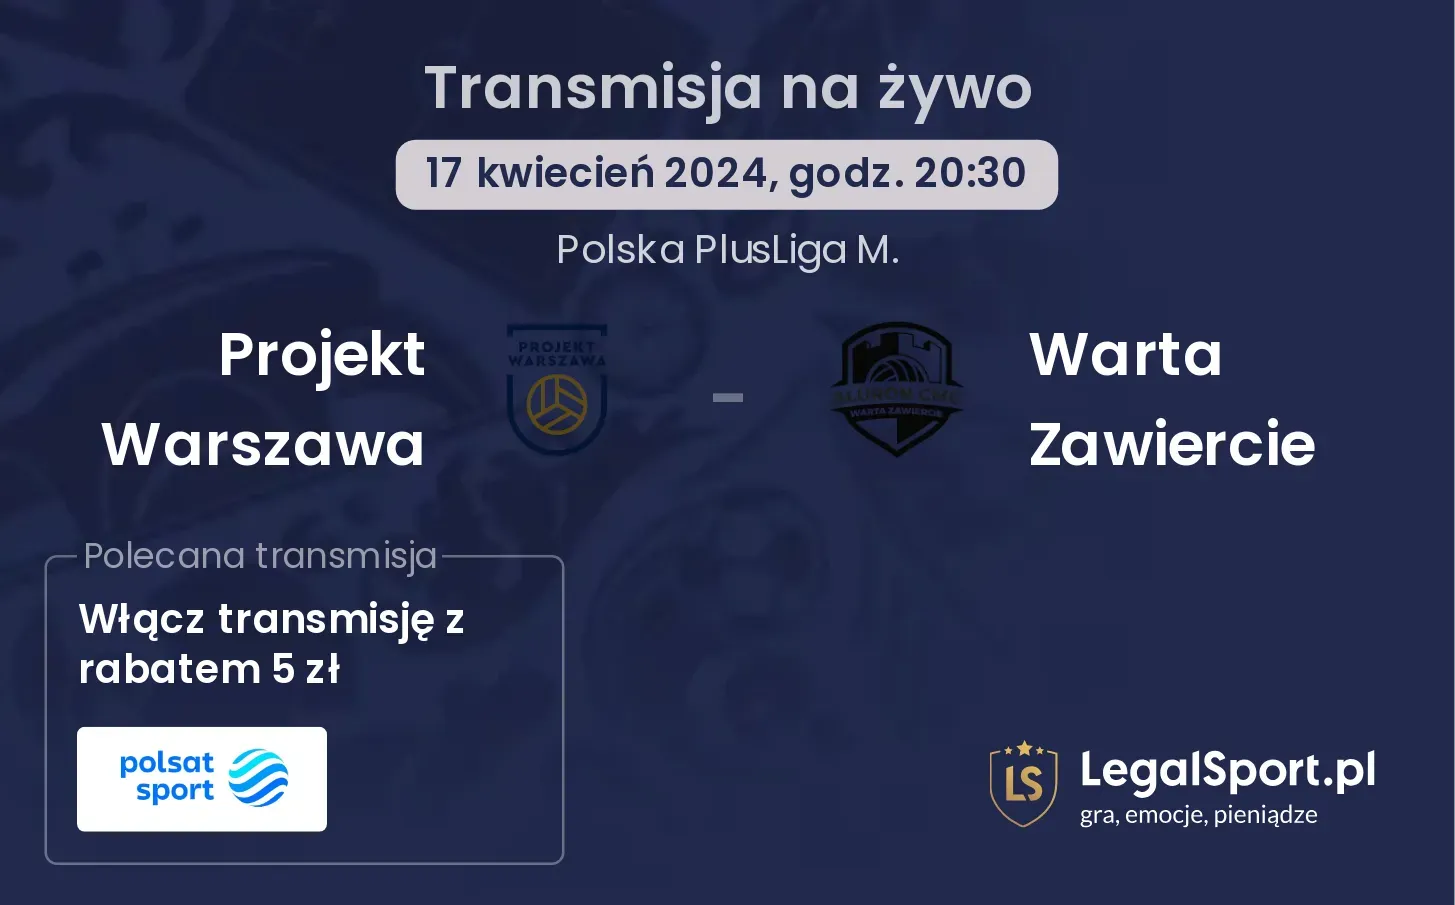 Projekt Warszawa - Warta Zawiercie